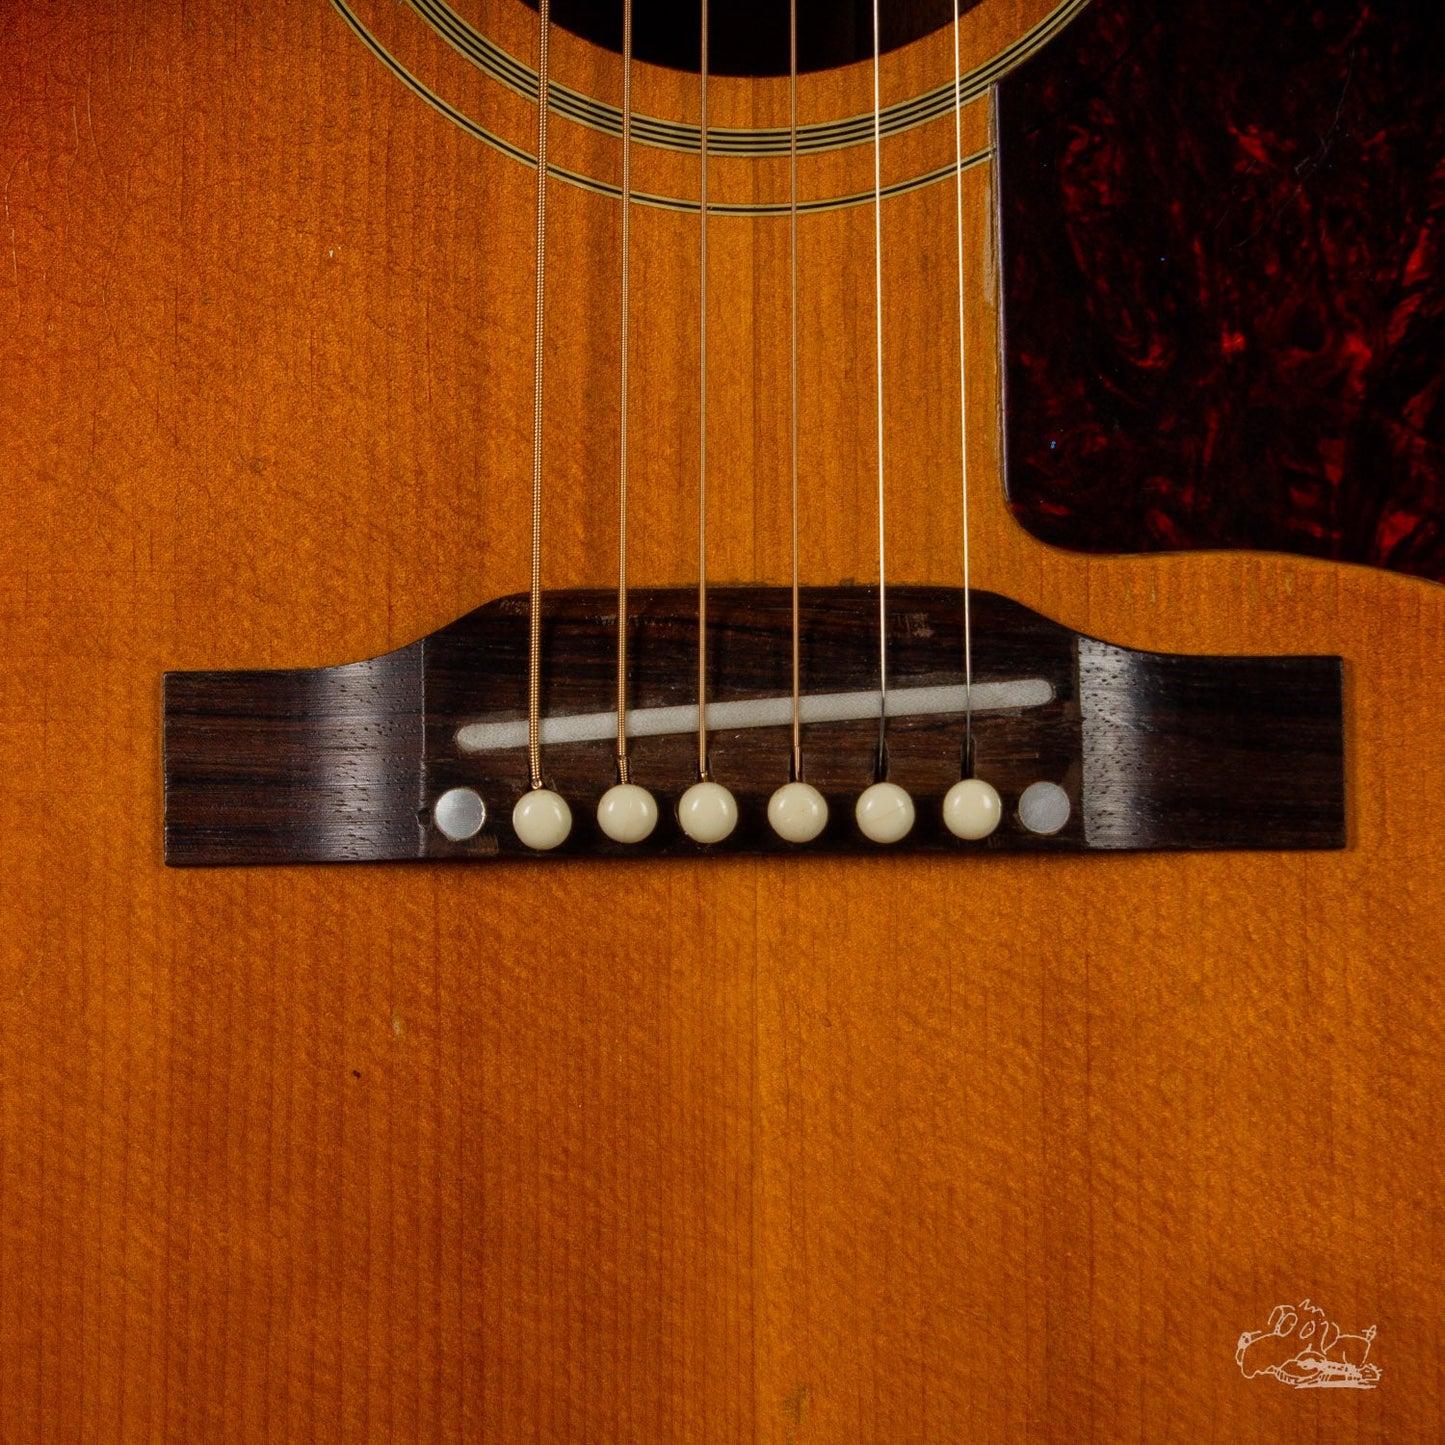 1956 Gibson Southern Jumbo